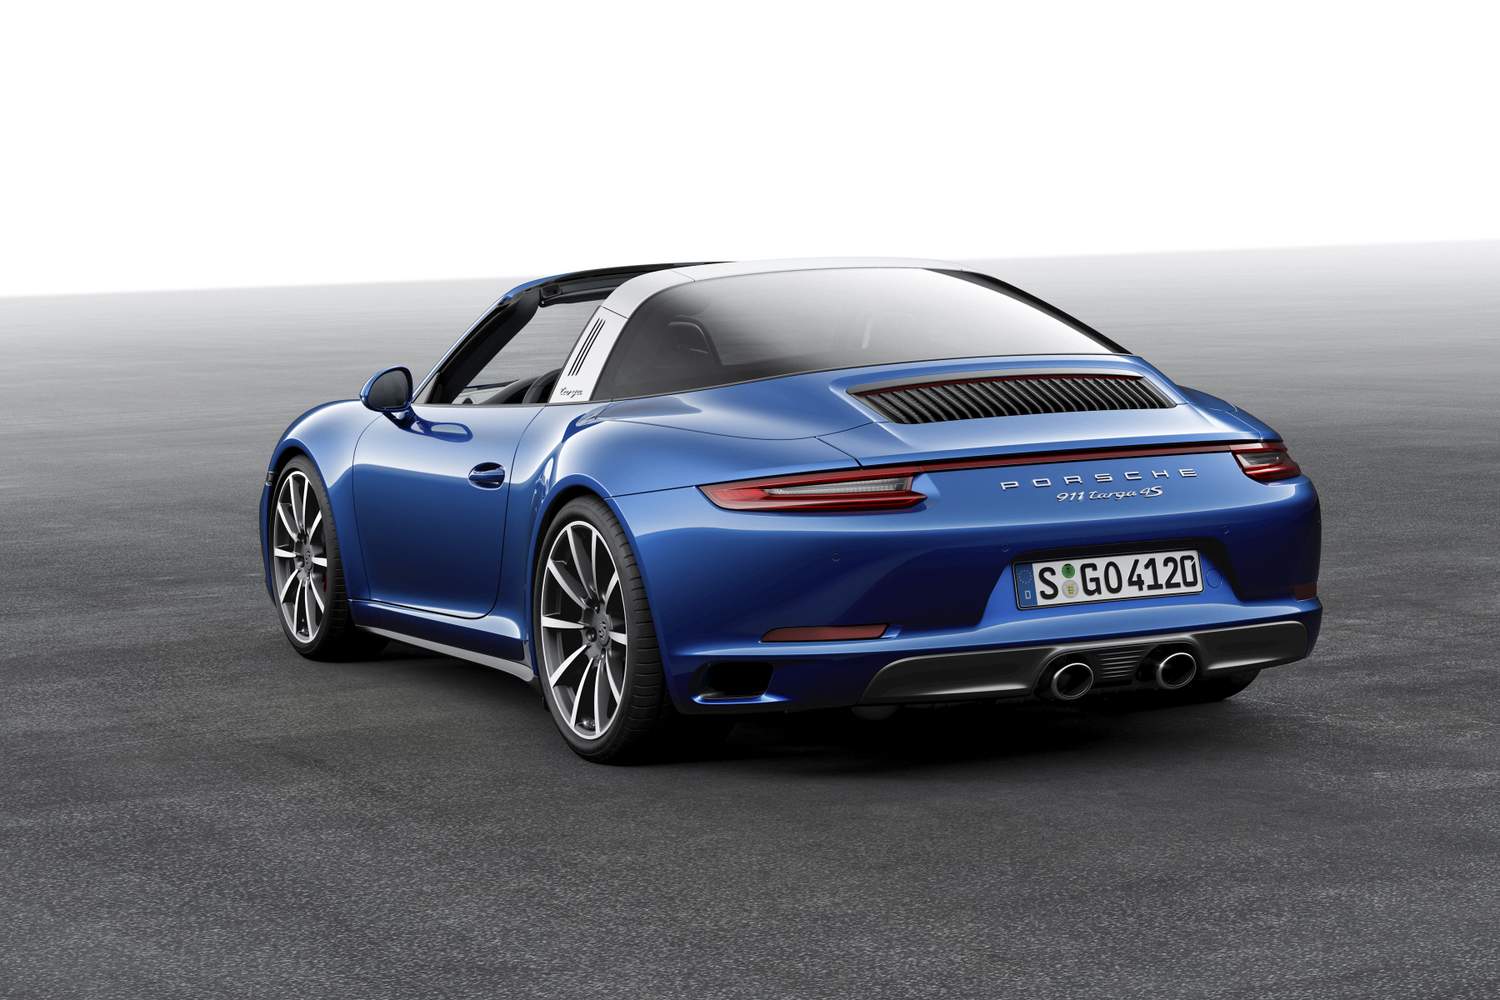 Idén erősebb, színesebb, okosabb a Porsche 911 9